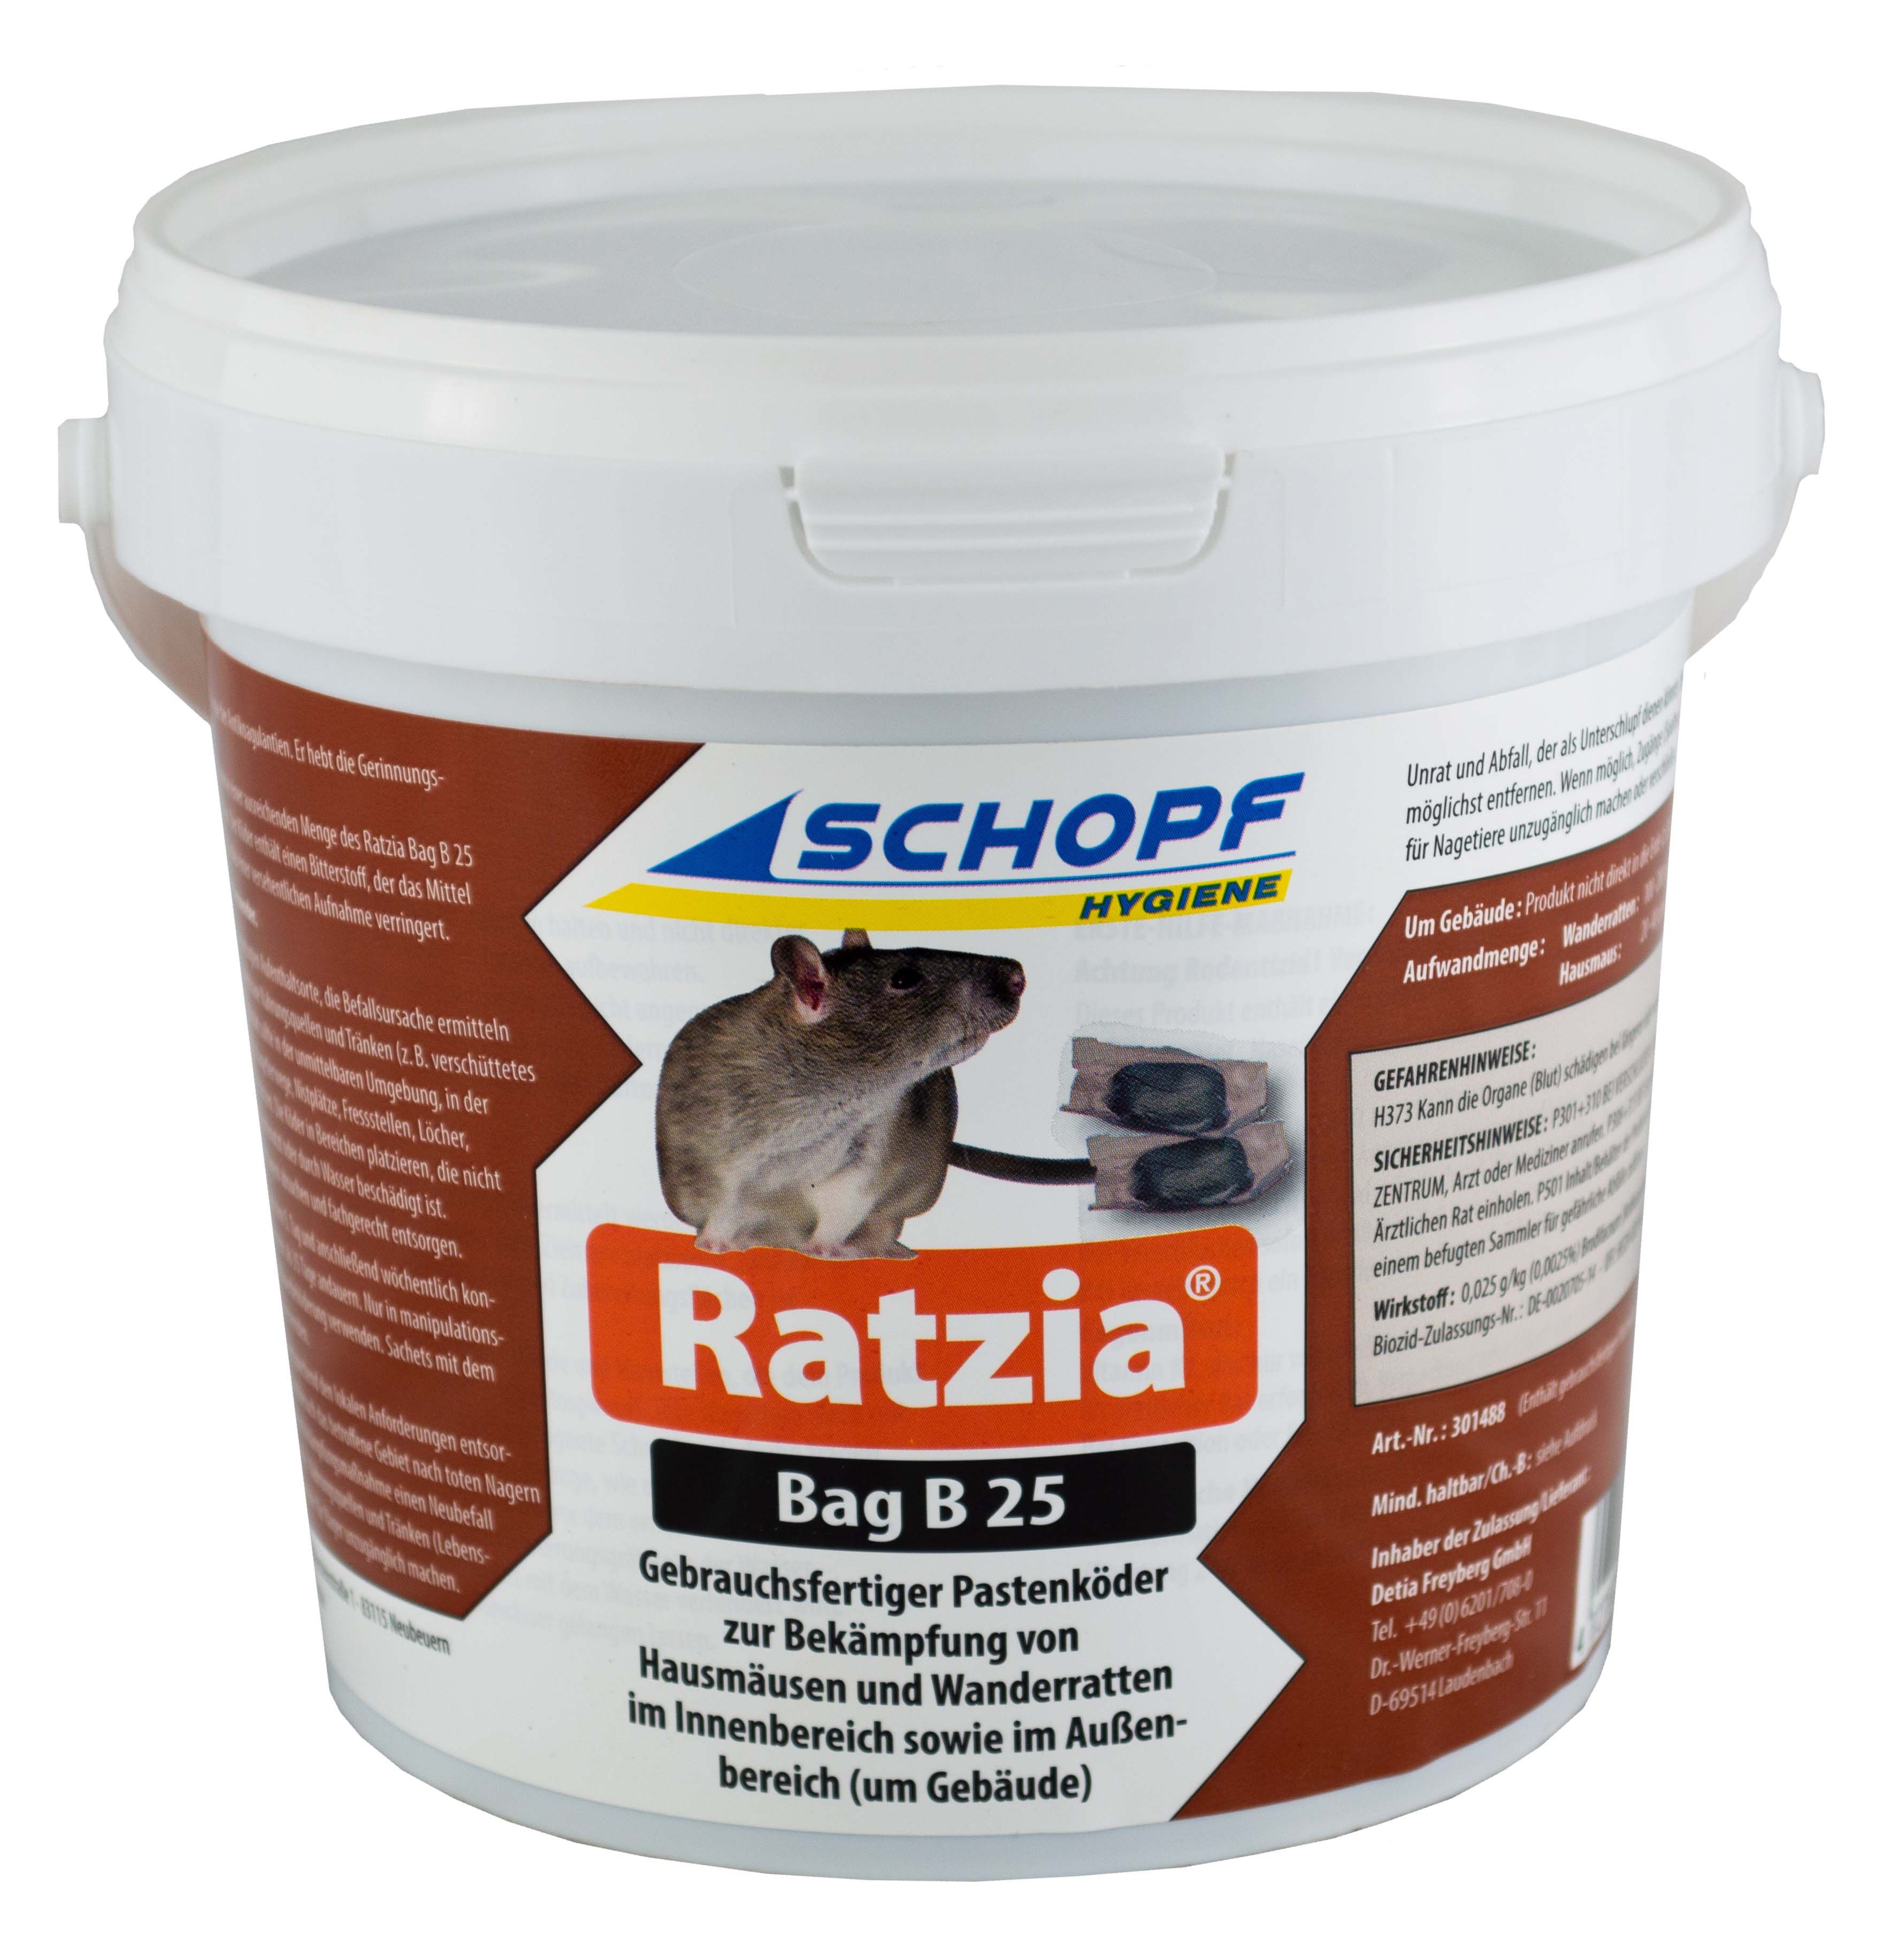 Ratzia Bag B 25 Gebrauchsfertiger Pastenköder Schopf 1,5kg